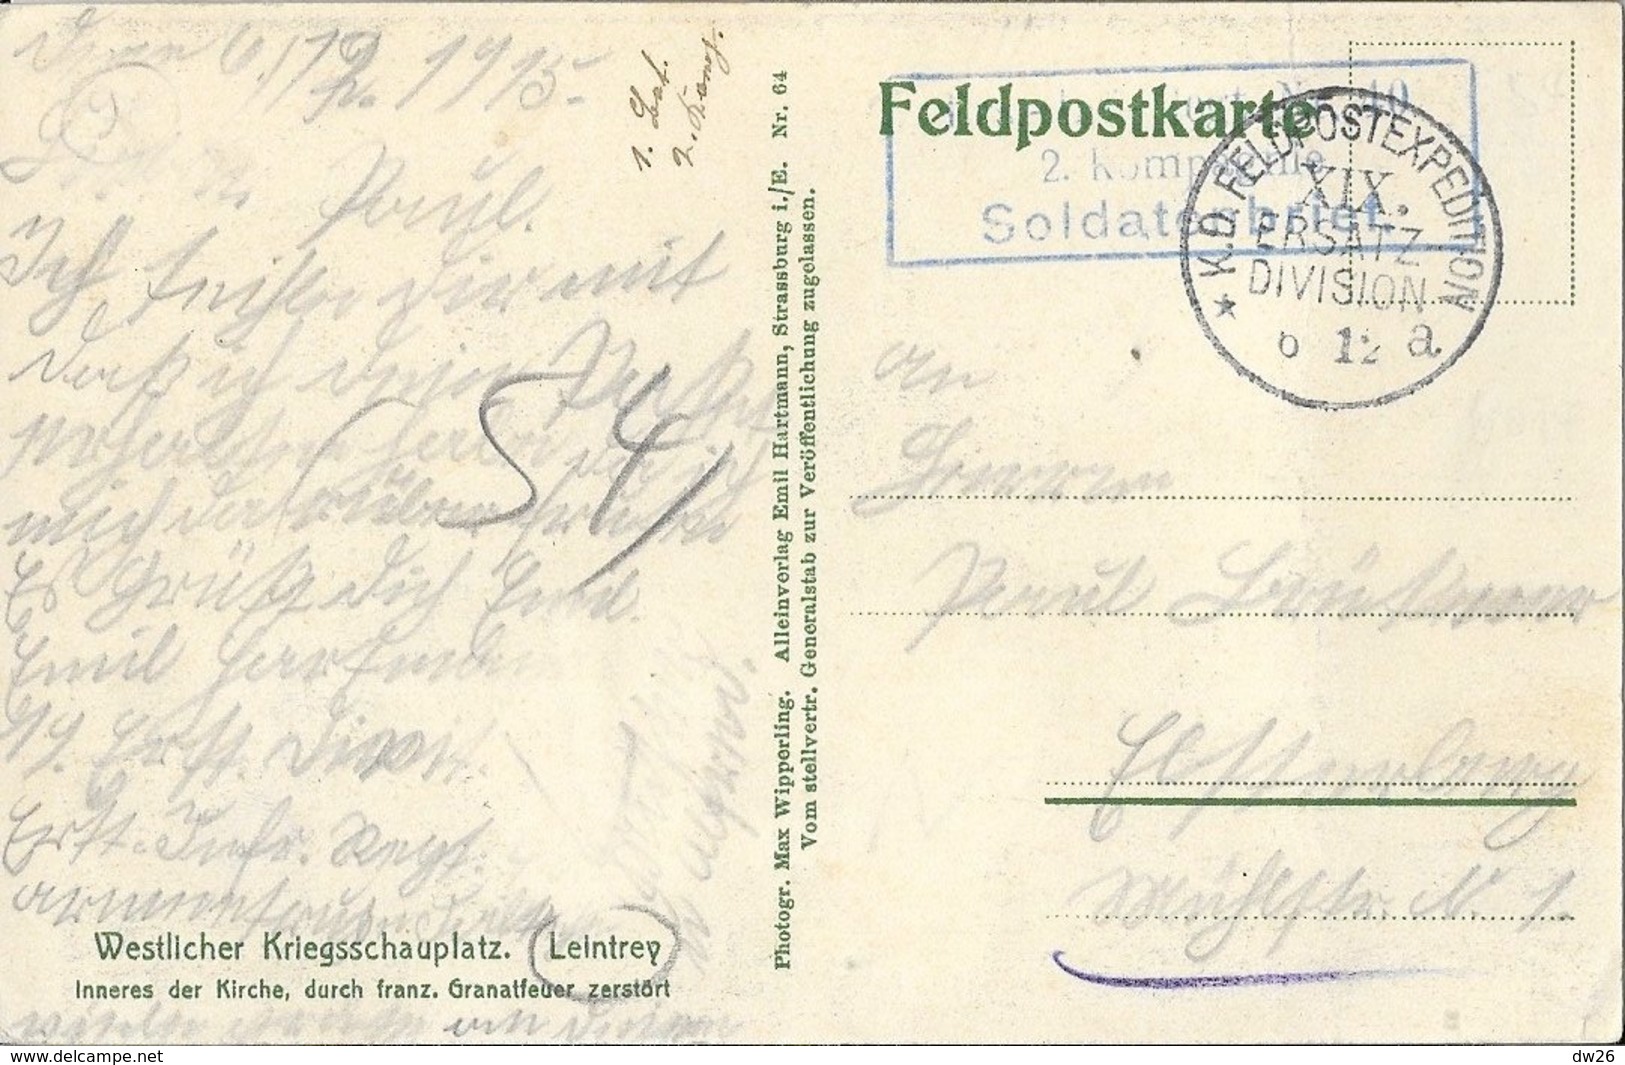 Belle collection 7 cartes, correspondance en Allemand: Leintrey après le bombardement, Kirche u. Schulhaus, Franz Dorf..